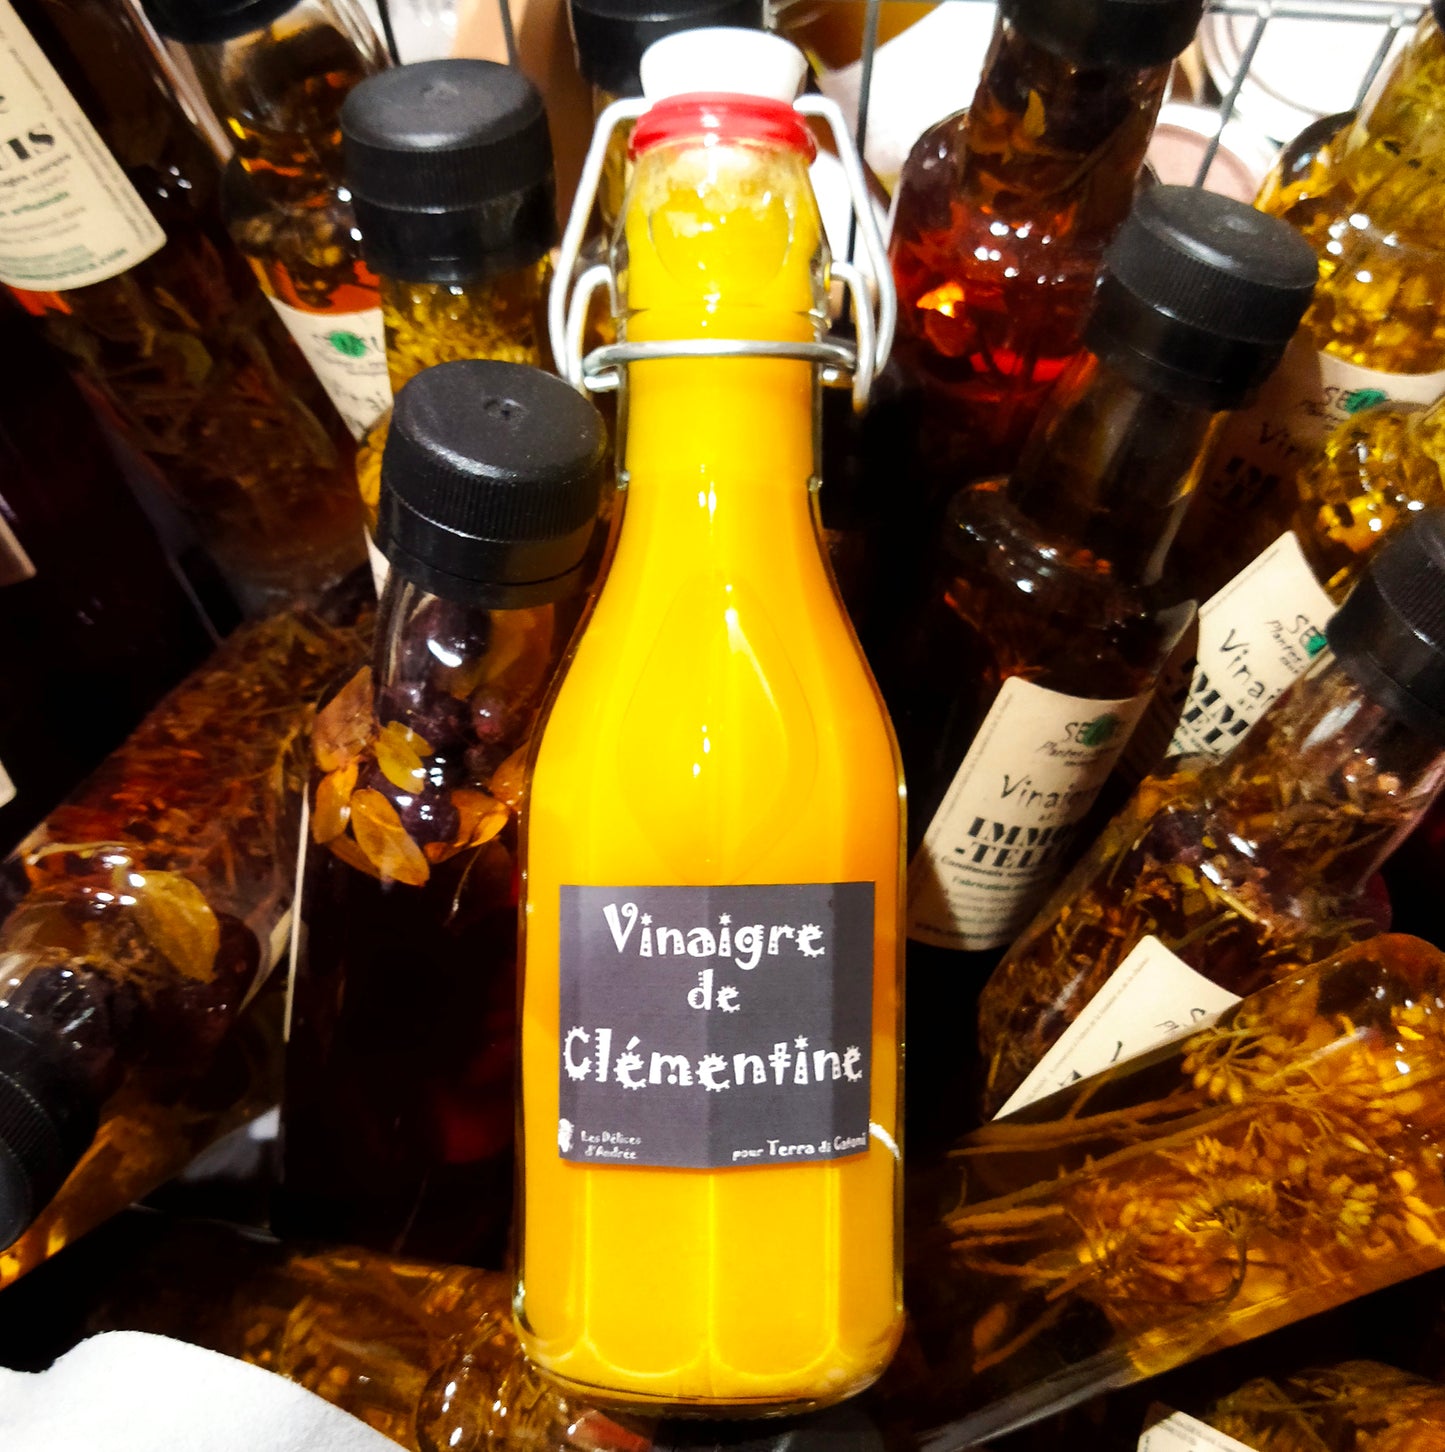 Clementine vinegar (25 cl)